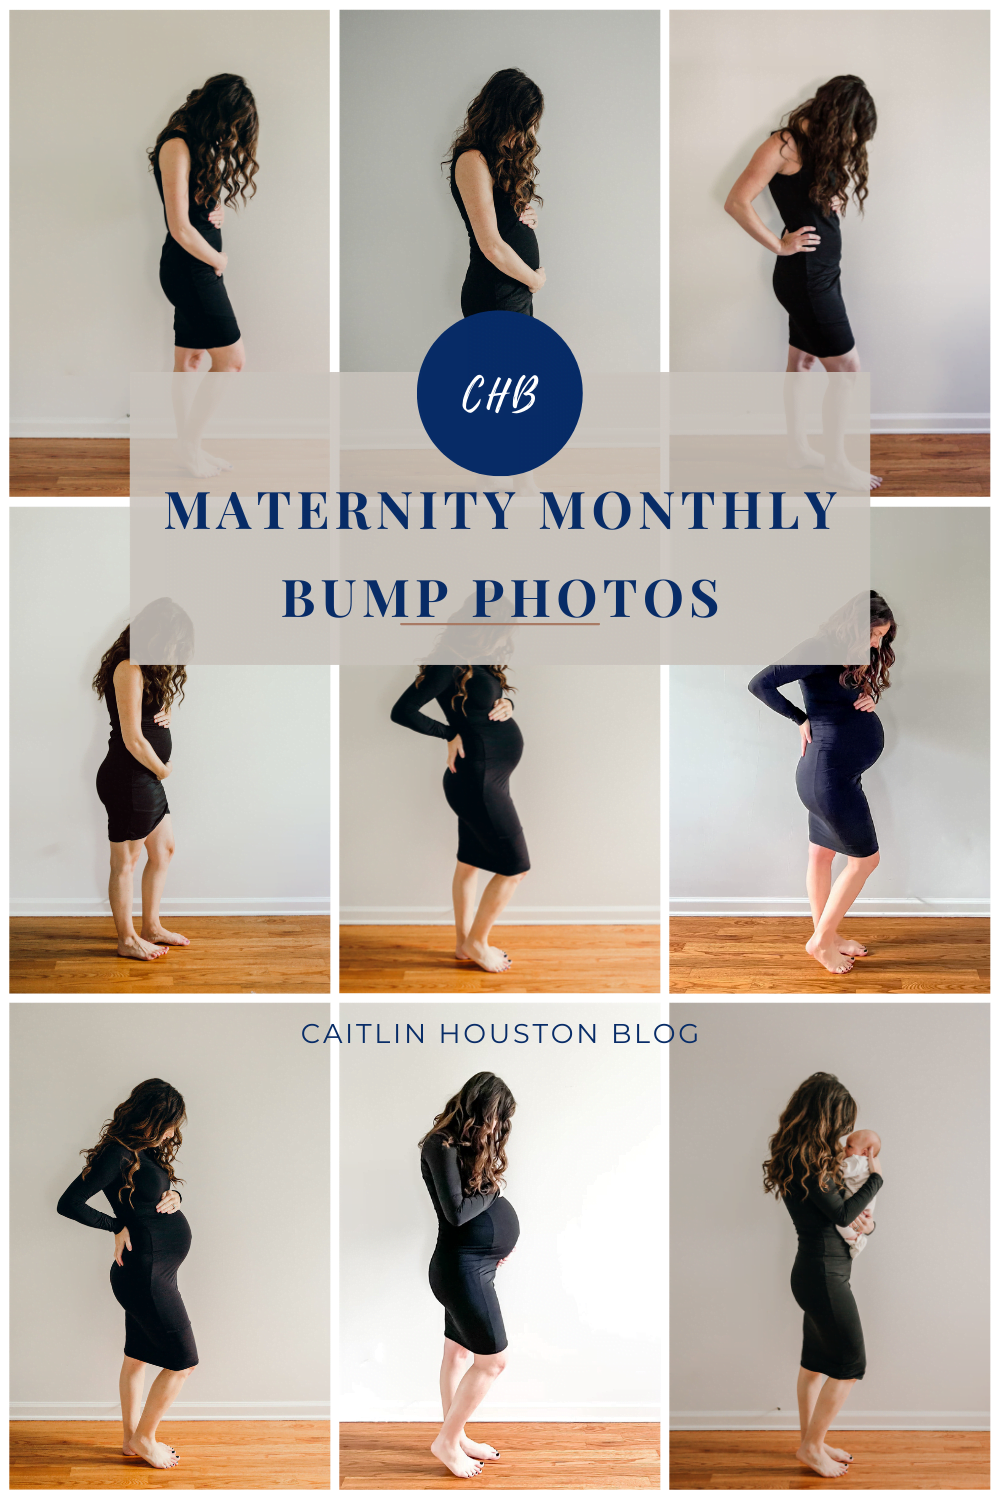 Monthly Maternity Bump Photos Caitlin Houston Blog